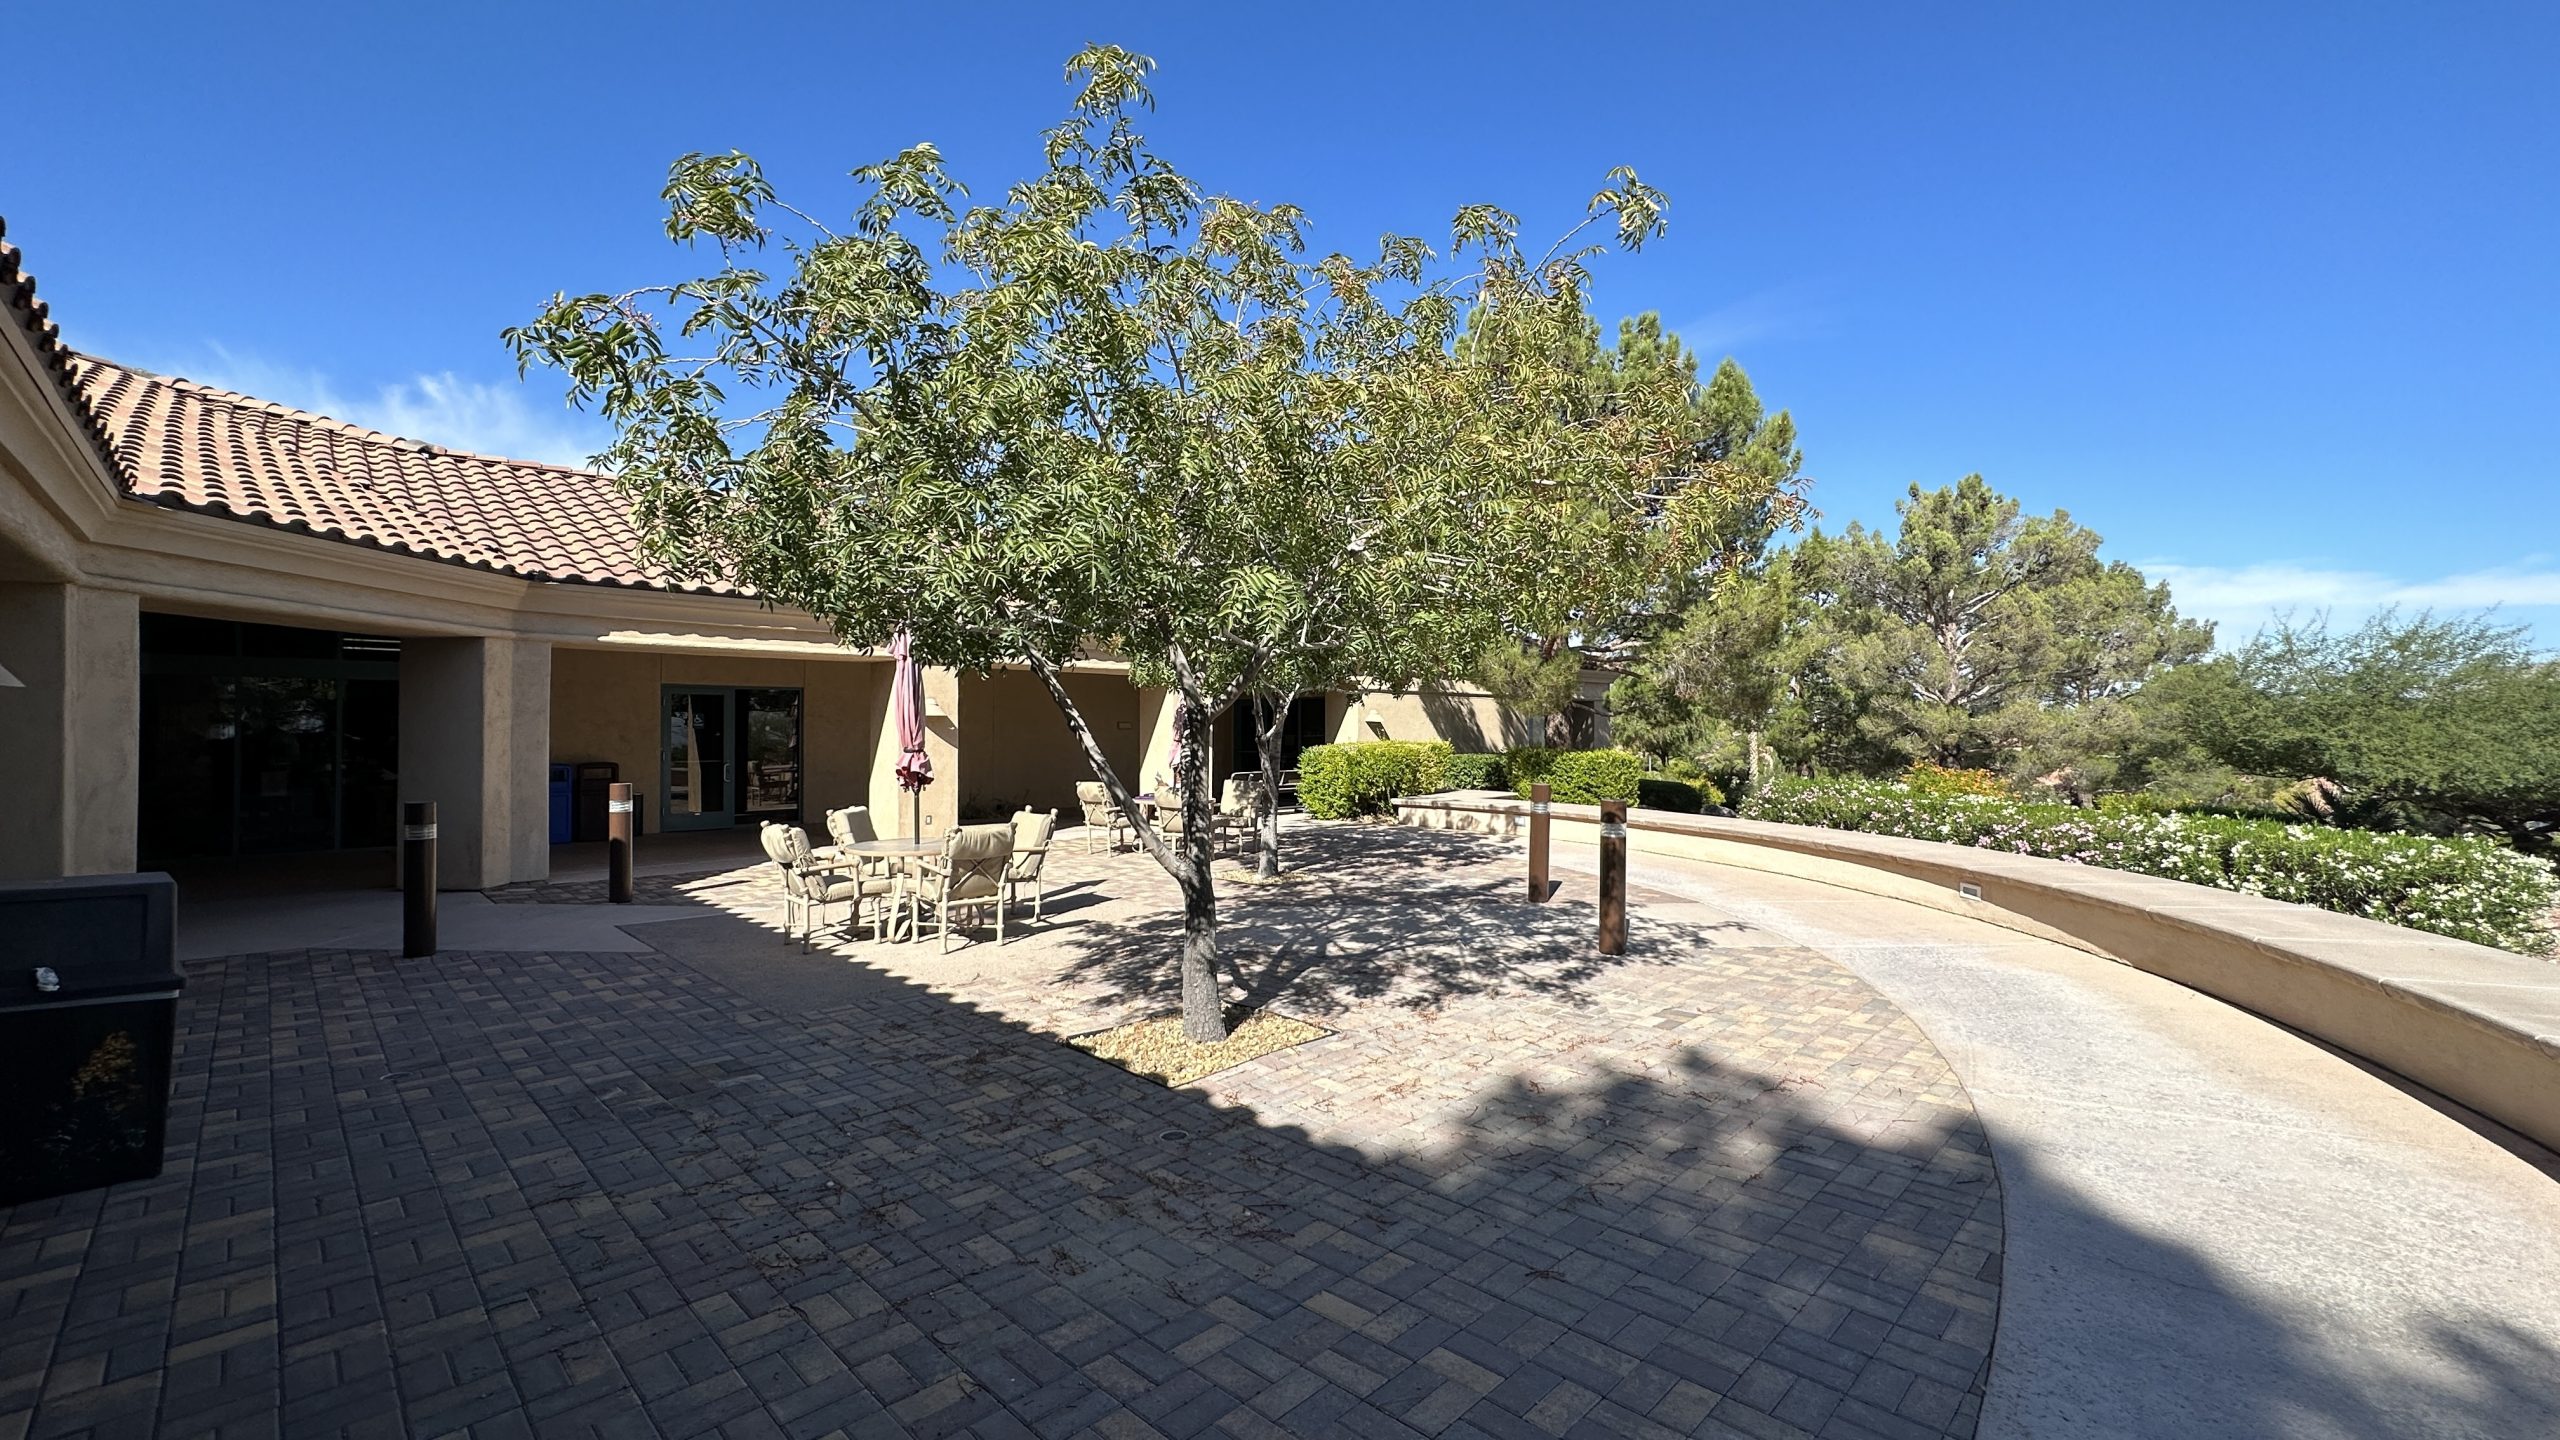 Desert Vista Community Center